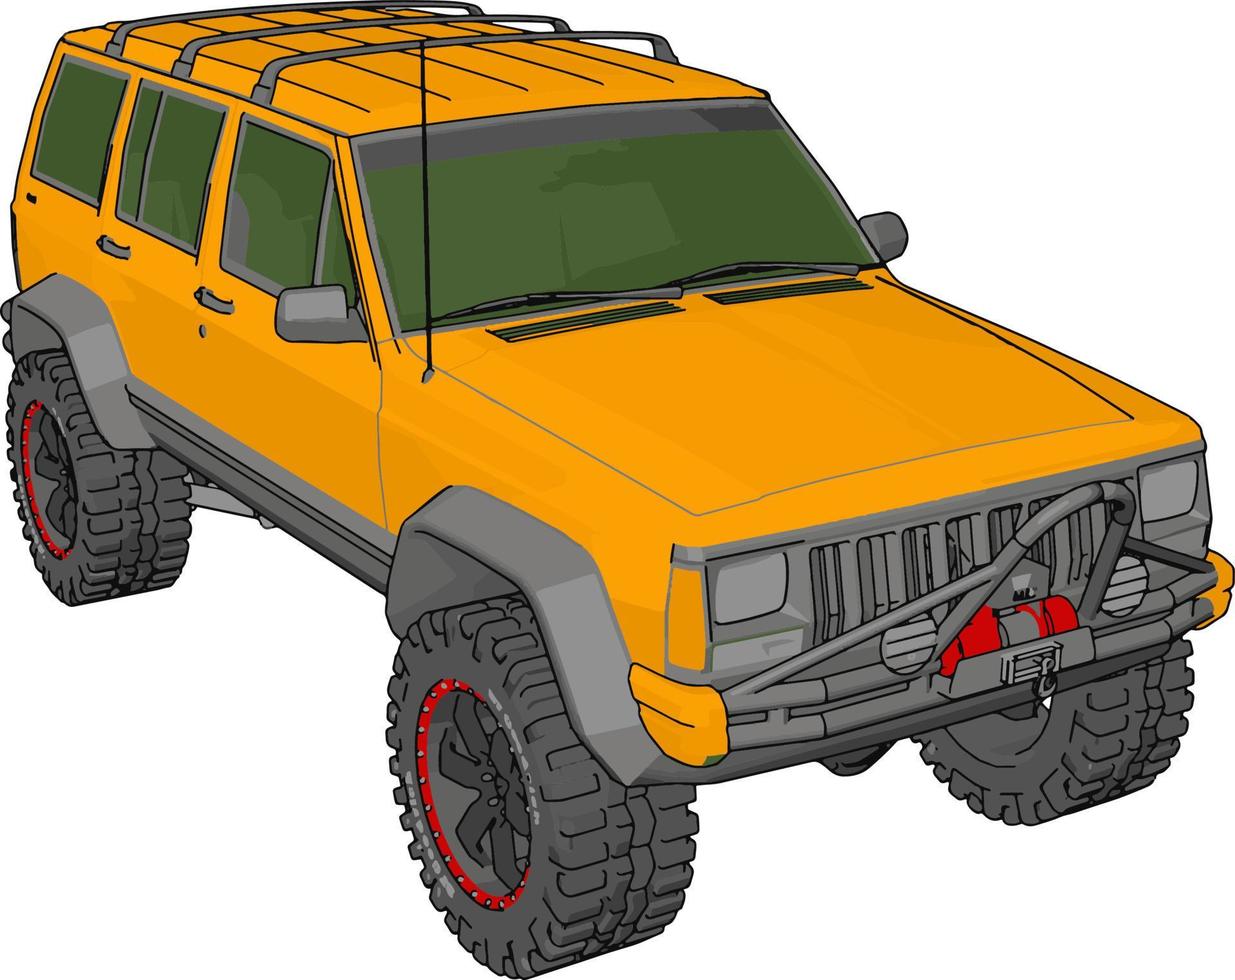 Jeep cherokee amarillo, ilustración, vector sobre fondo blanco.